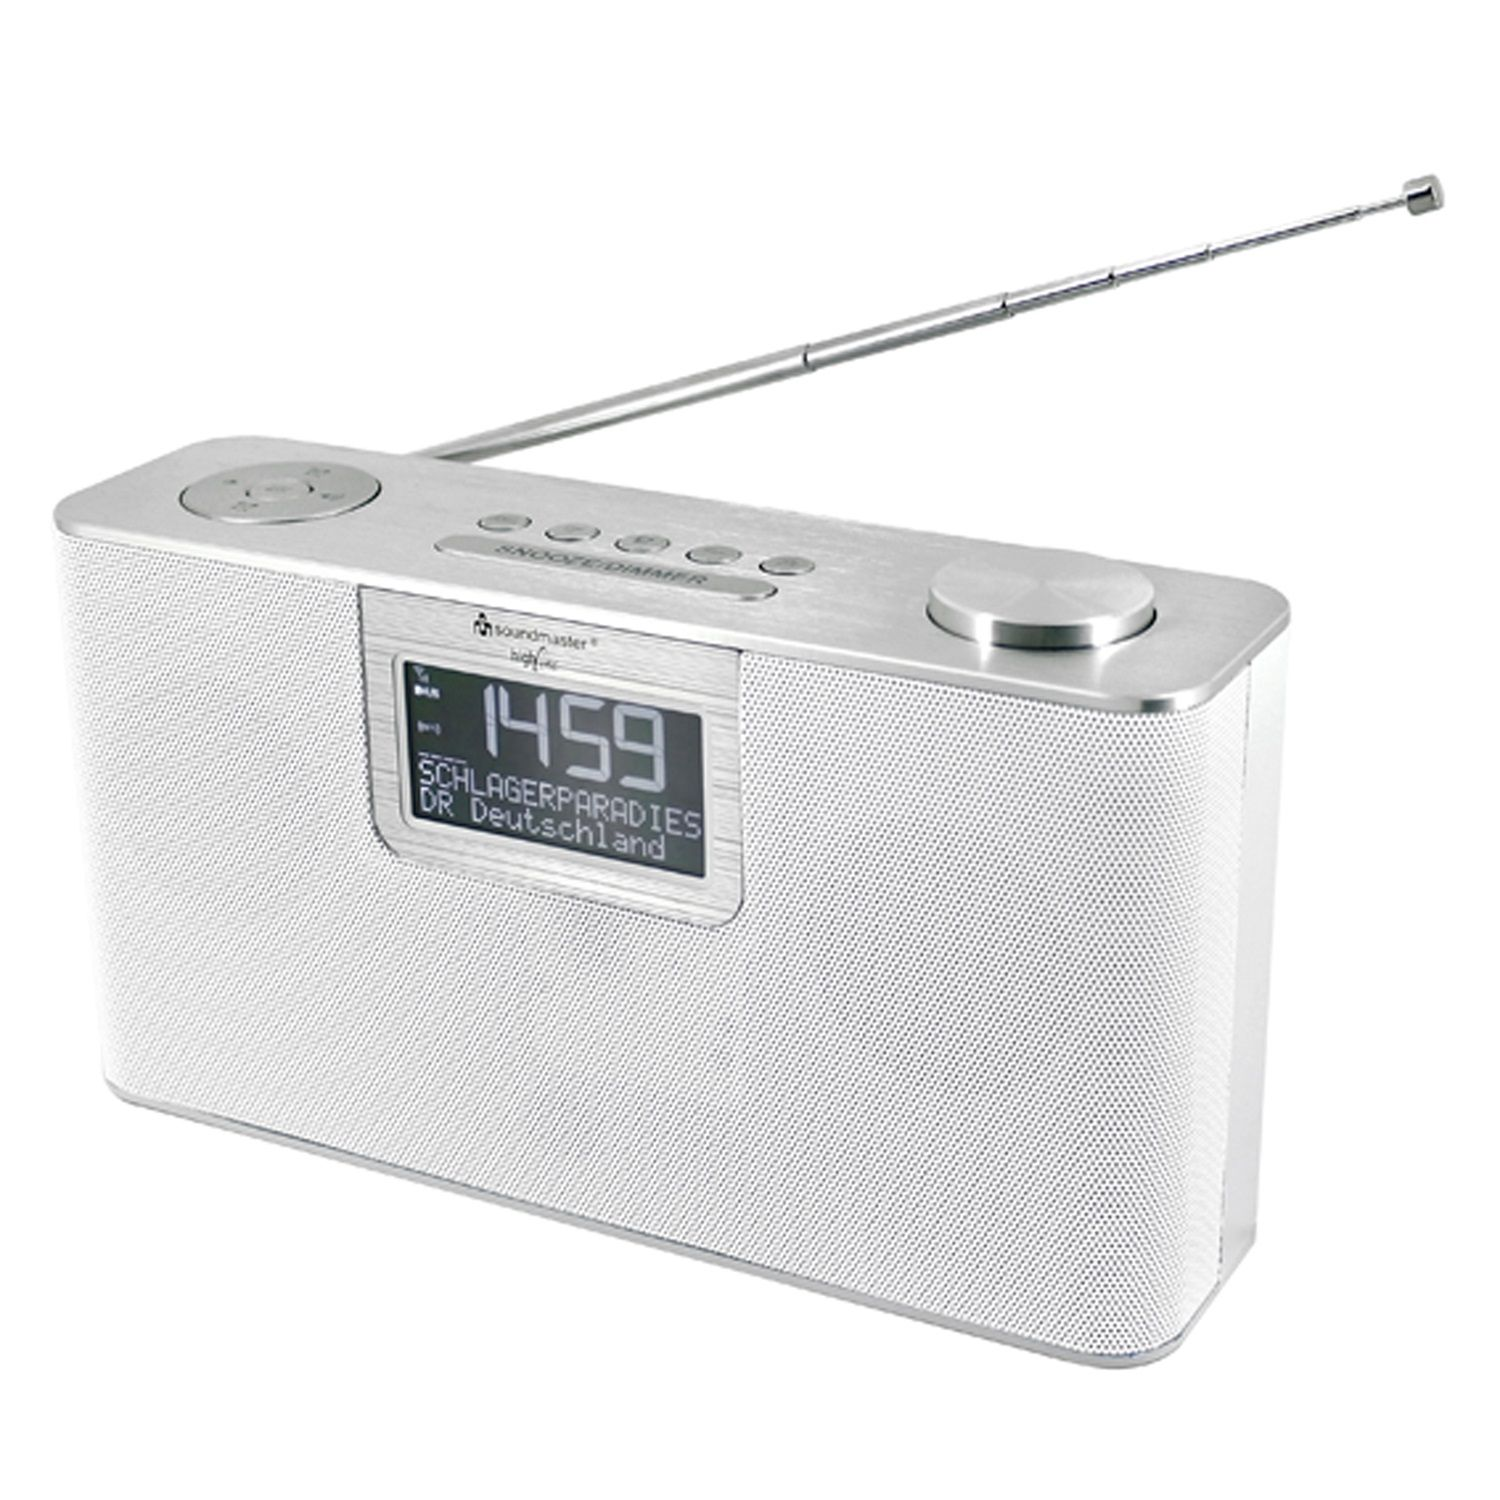 SOUNDMASTER DAB700WE Multifunktionsradio, FM, Bluetooth, DAB+, DAB, DAB+, weiß AM, FM